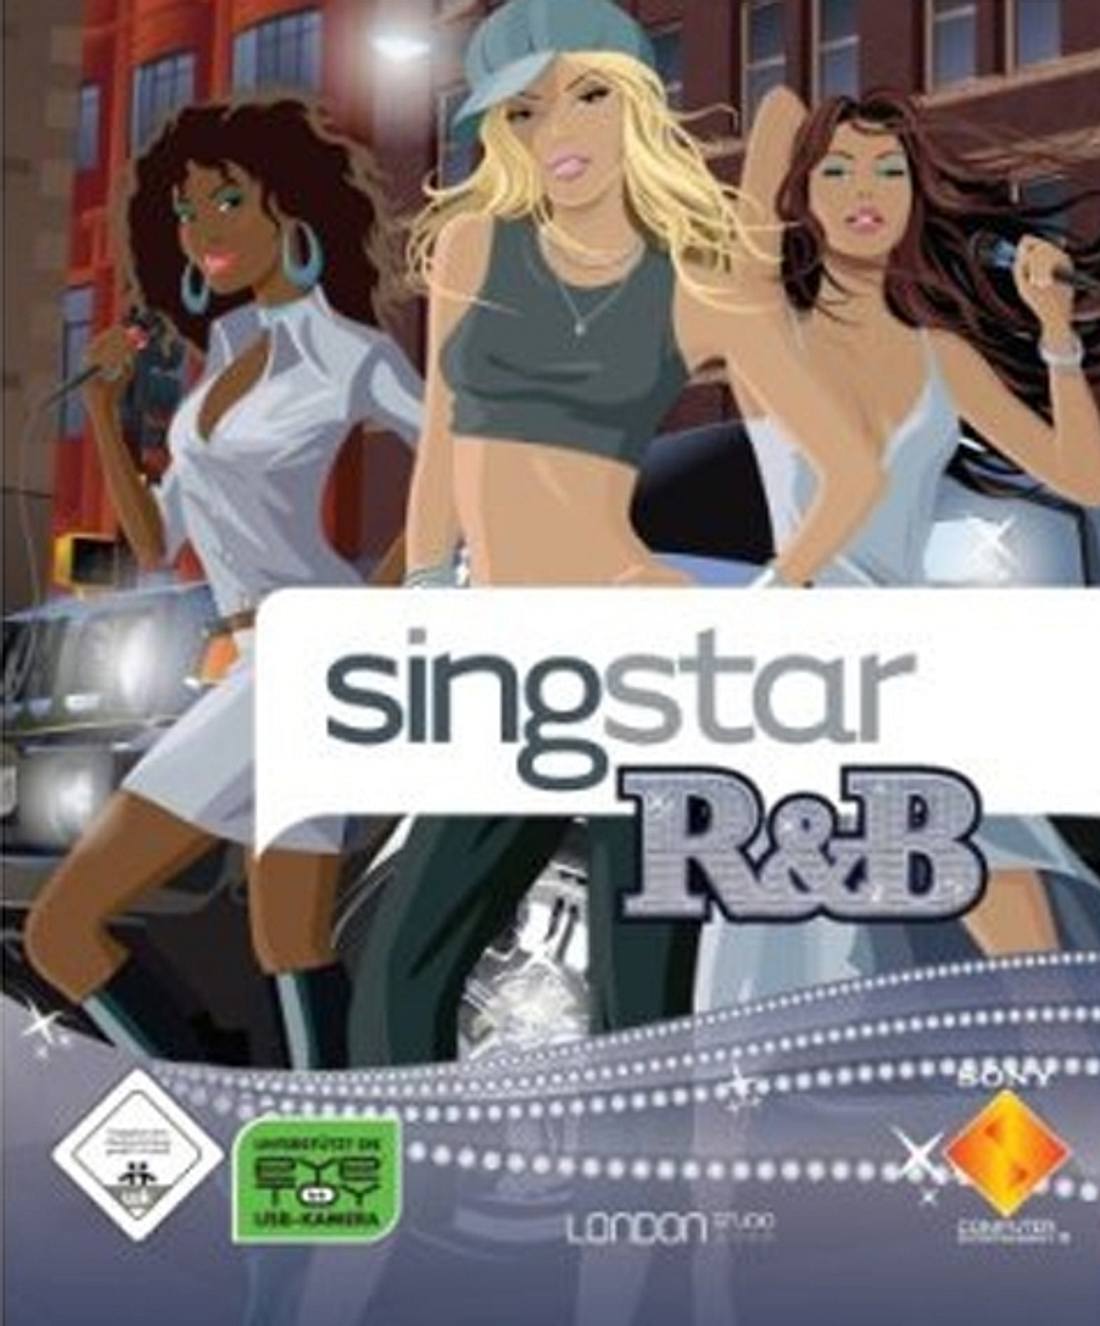 SingStar R&B - die Trackliste!